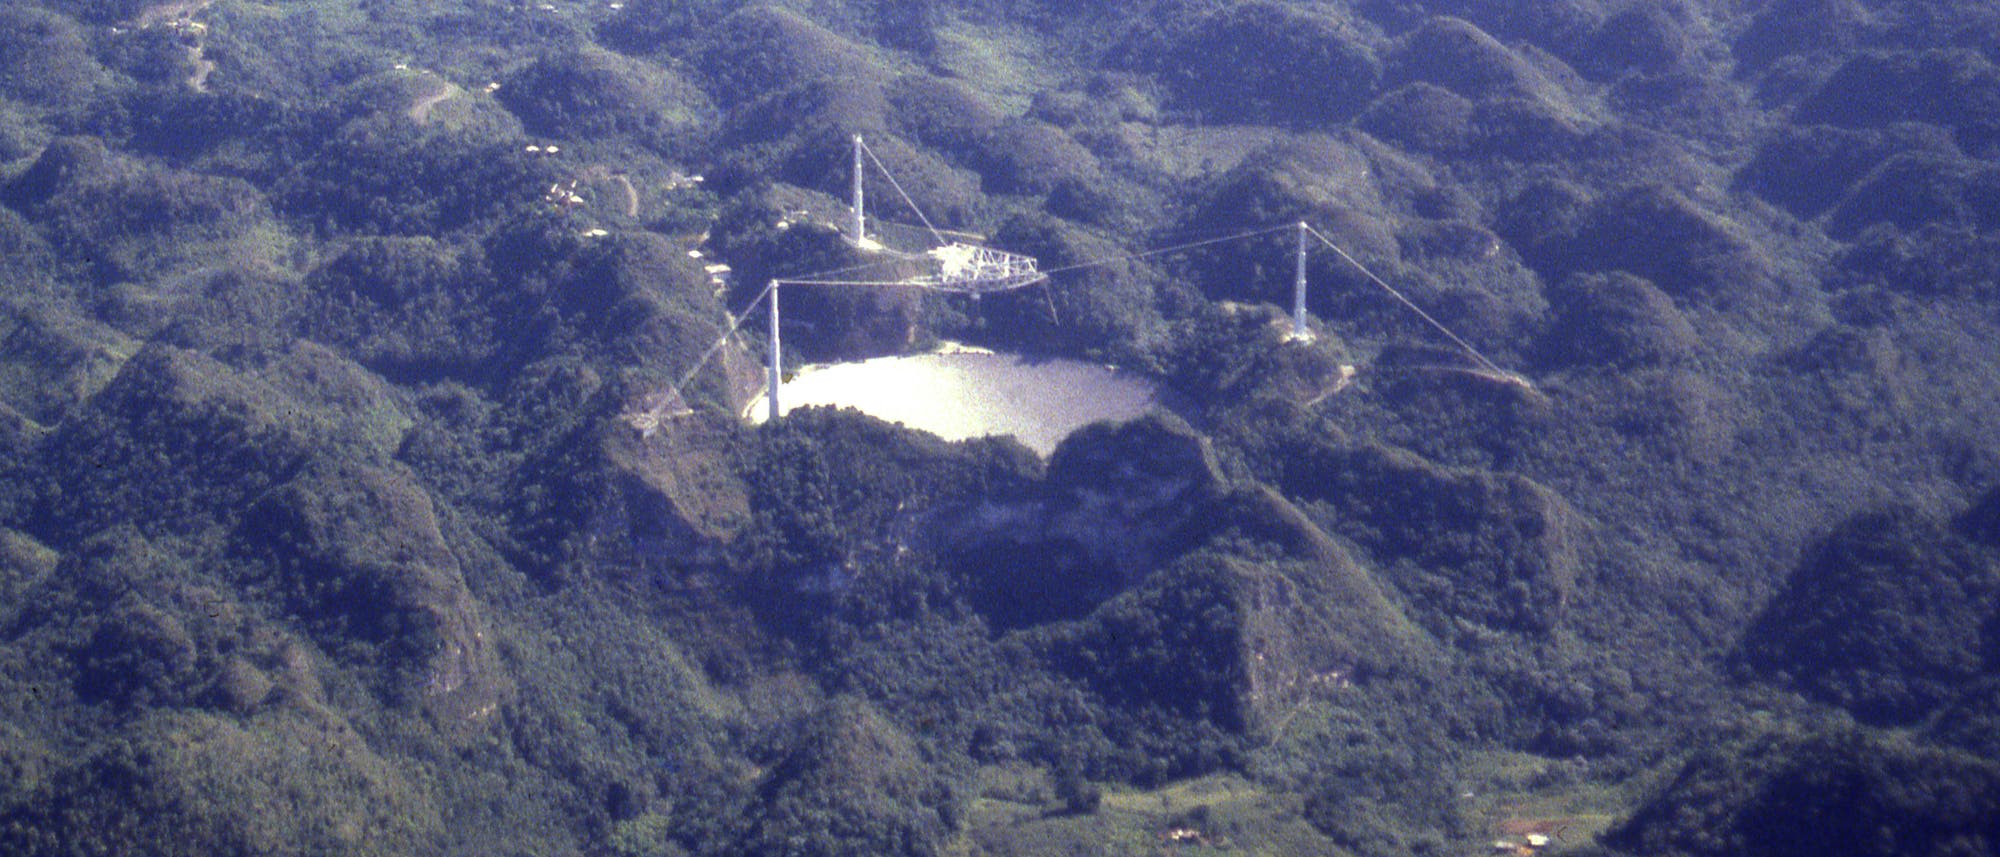 Das Arecibo-Radioteleskop in der umgebenden Landschaft.